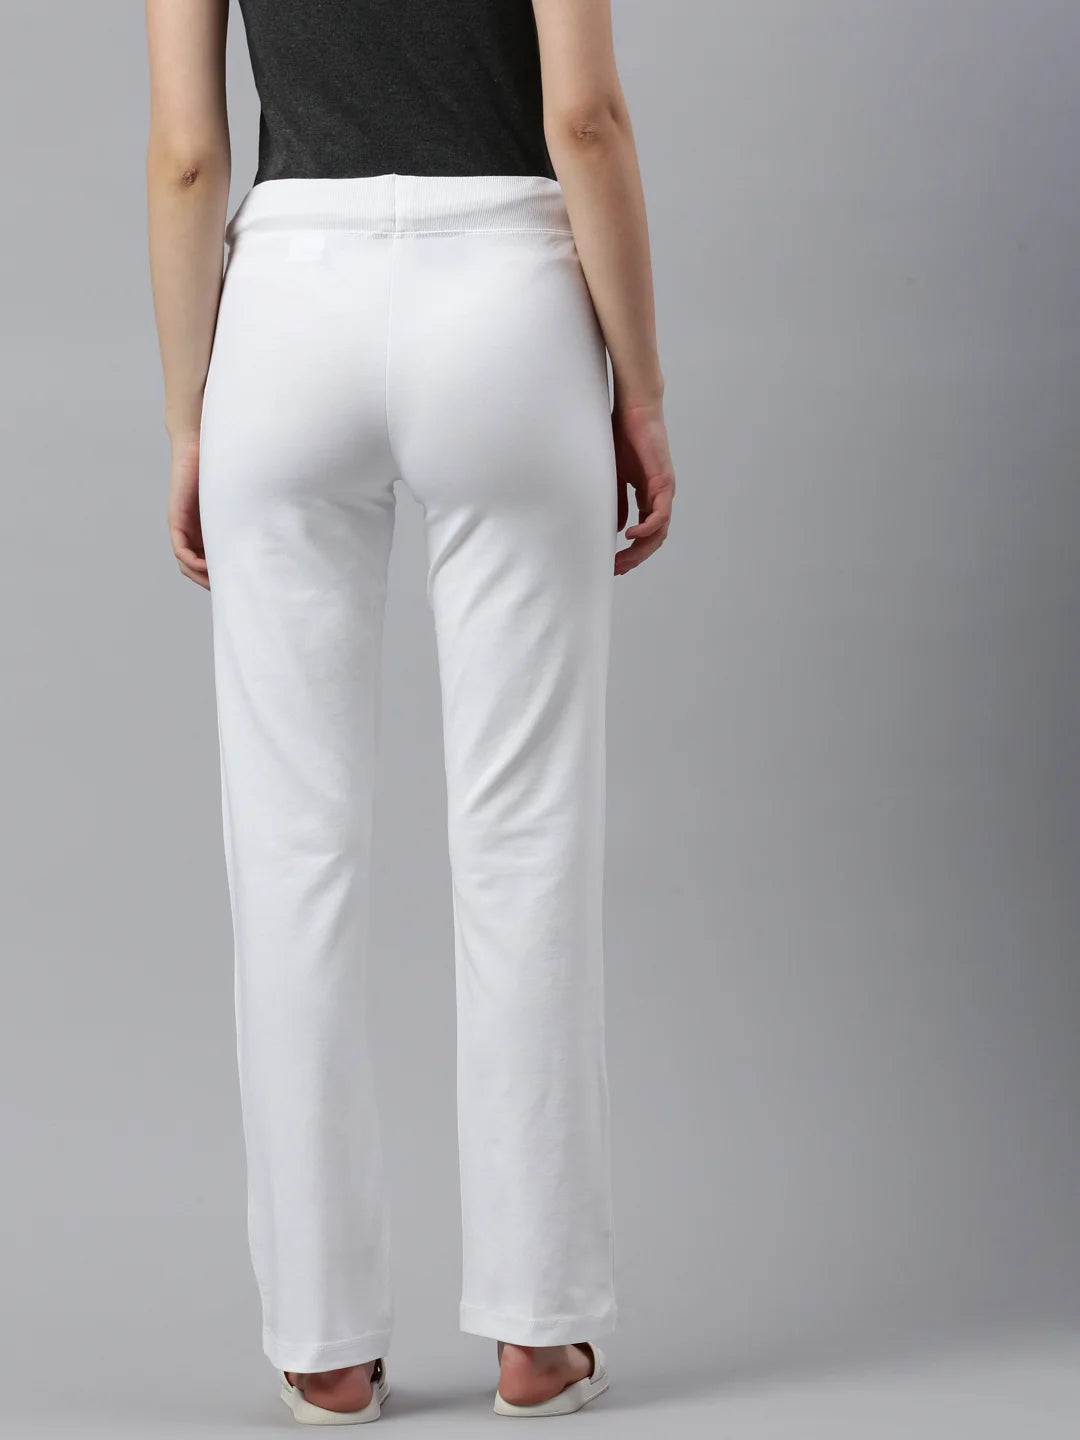 donna-candice-organico-cotone-pantaloni-traccia-bianco-schiena